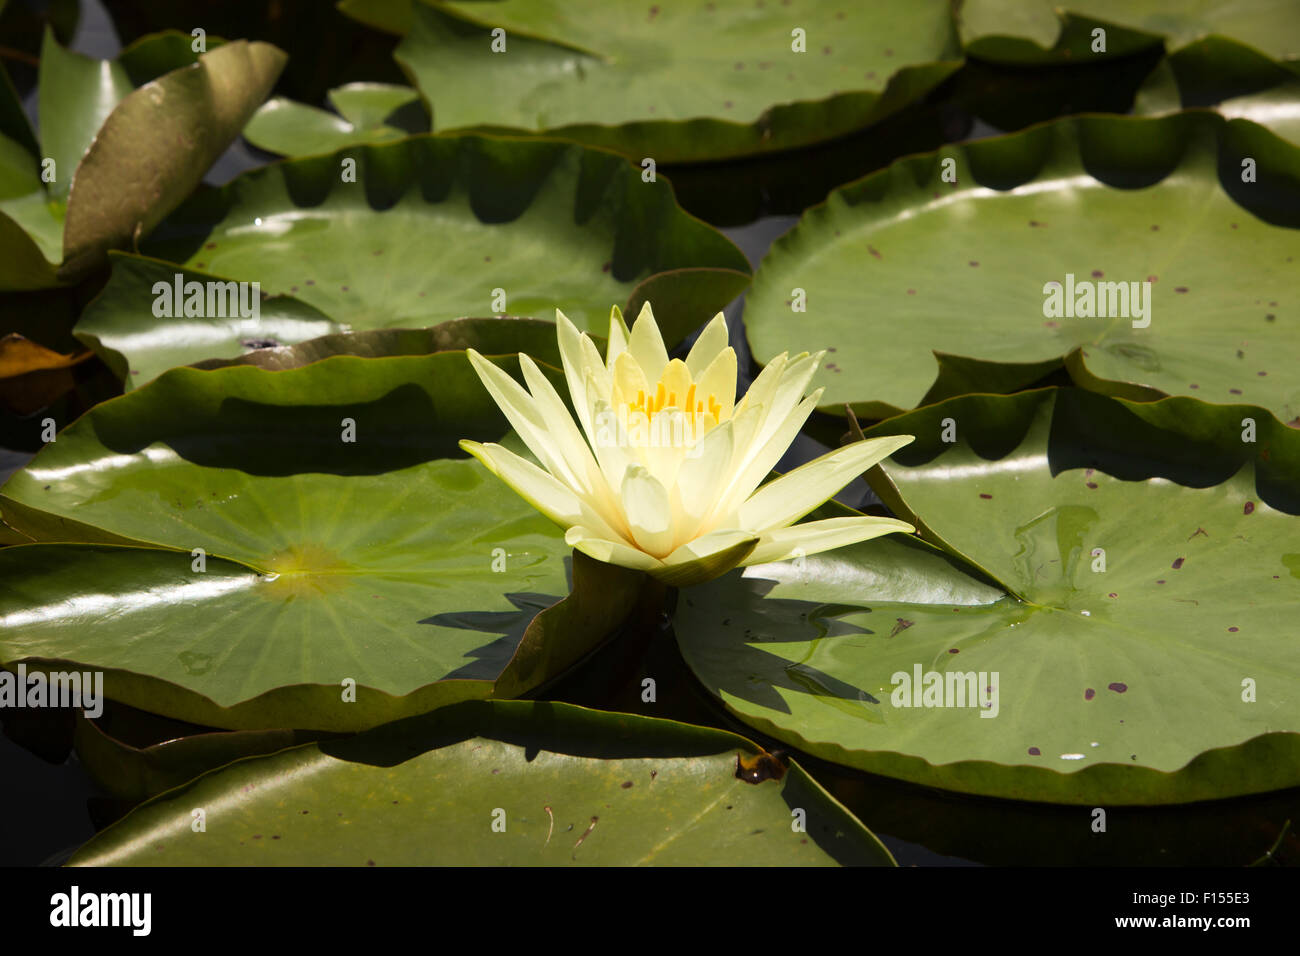 India, Jammu & Kashmir, Srinagar, Dal Lake, yellow lotus flower Stock Photo